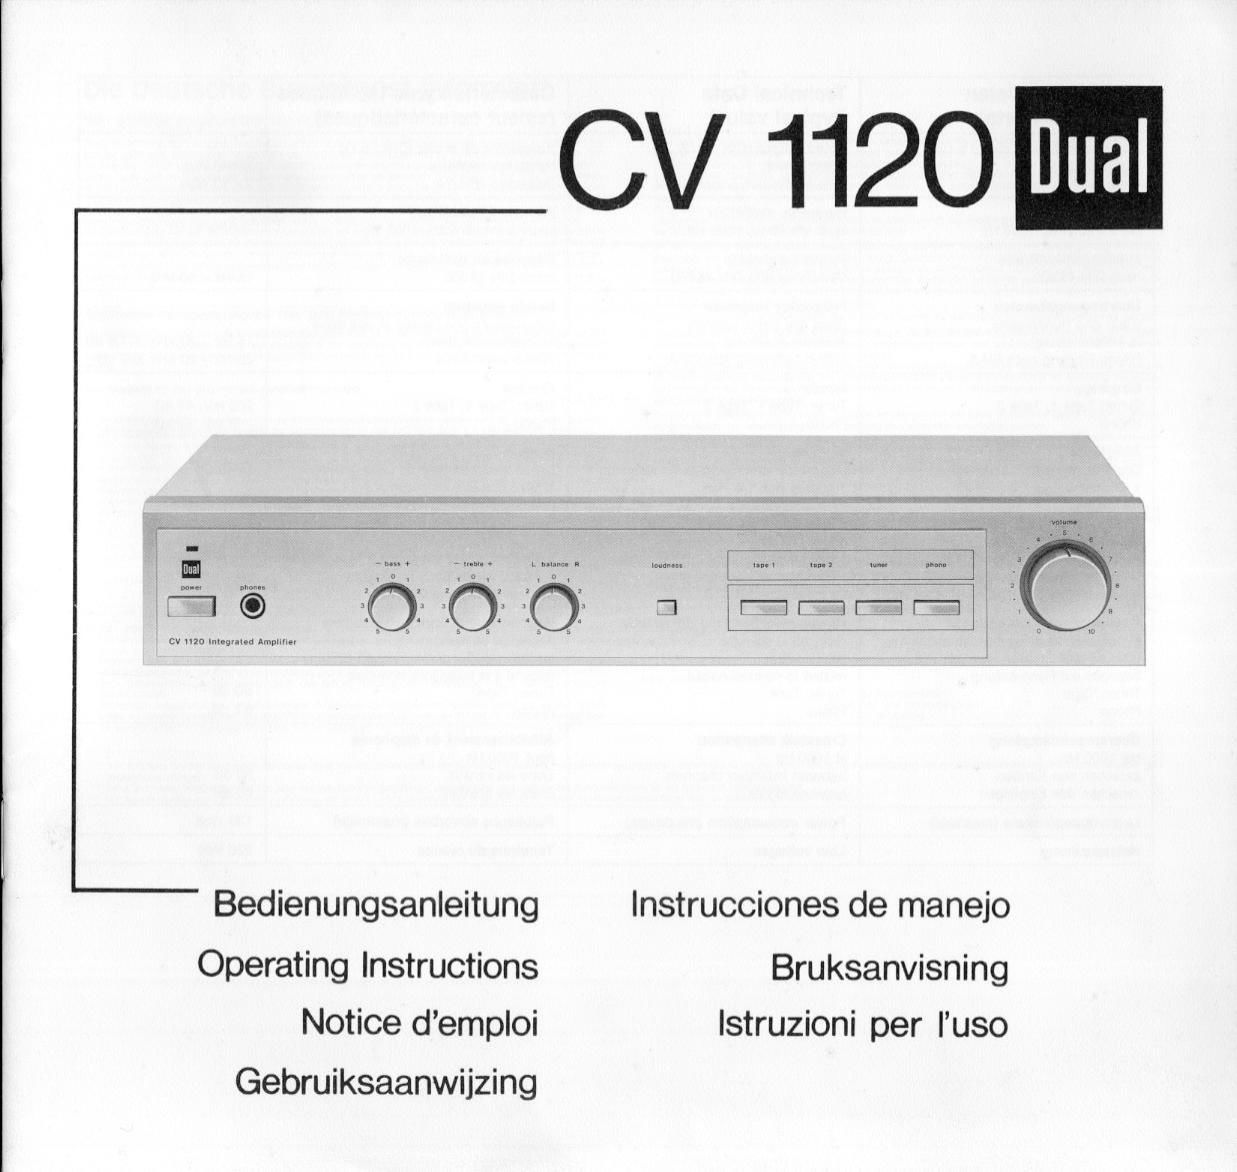 Dual CV 1120 Owners Manual